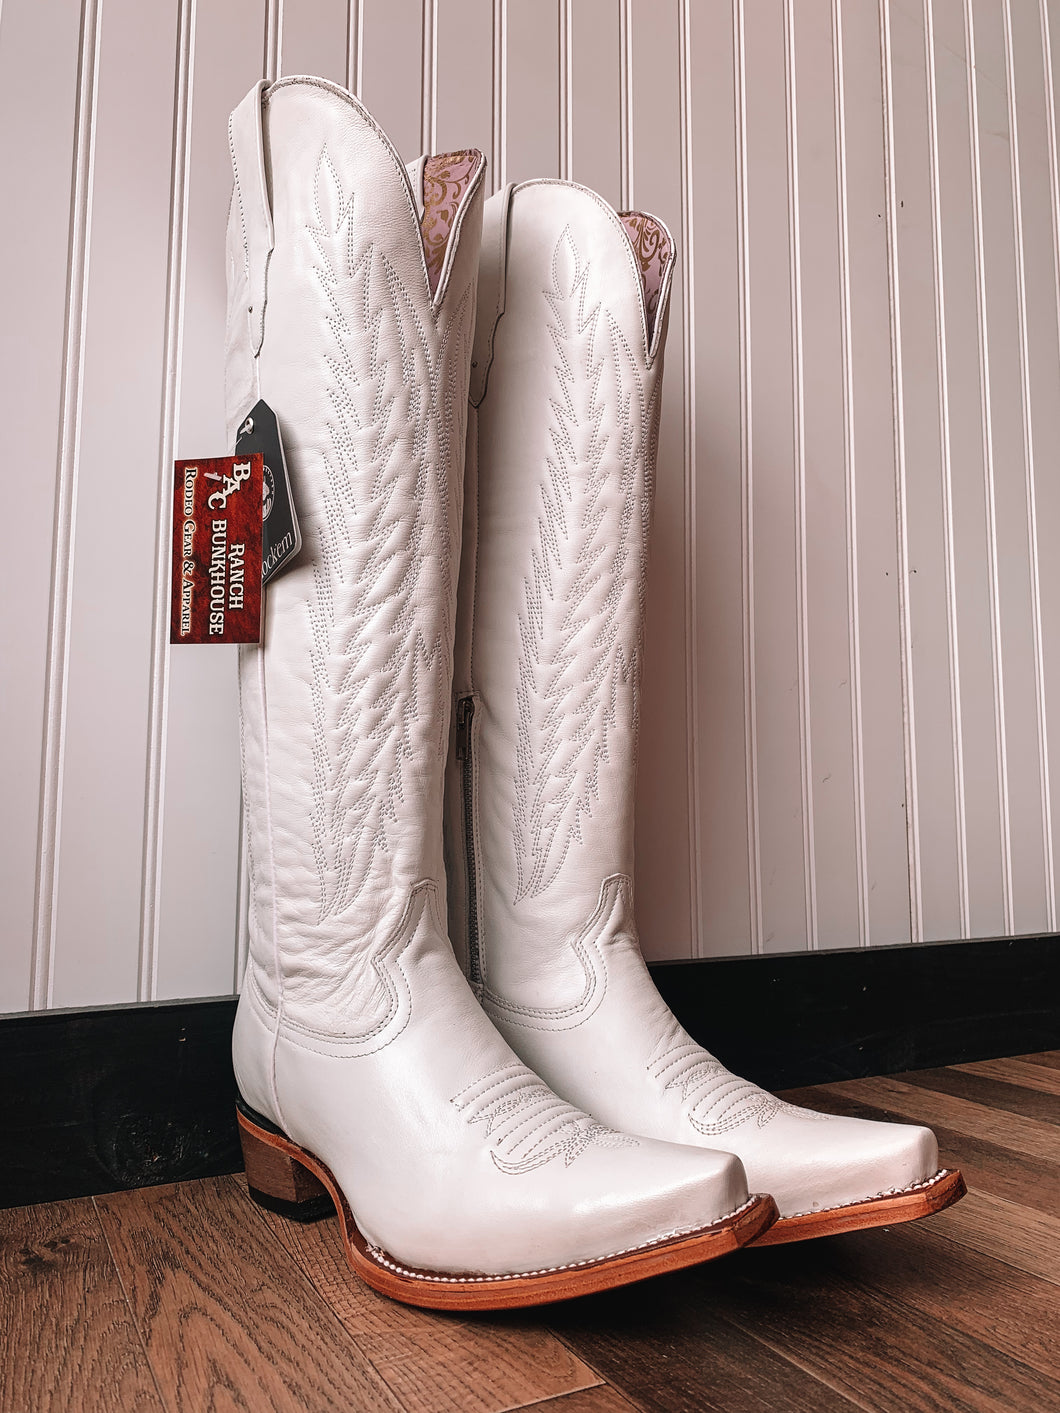 Ladies Boot #0173 (size 9.5)